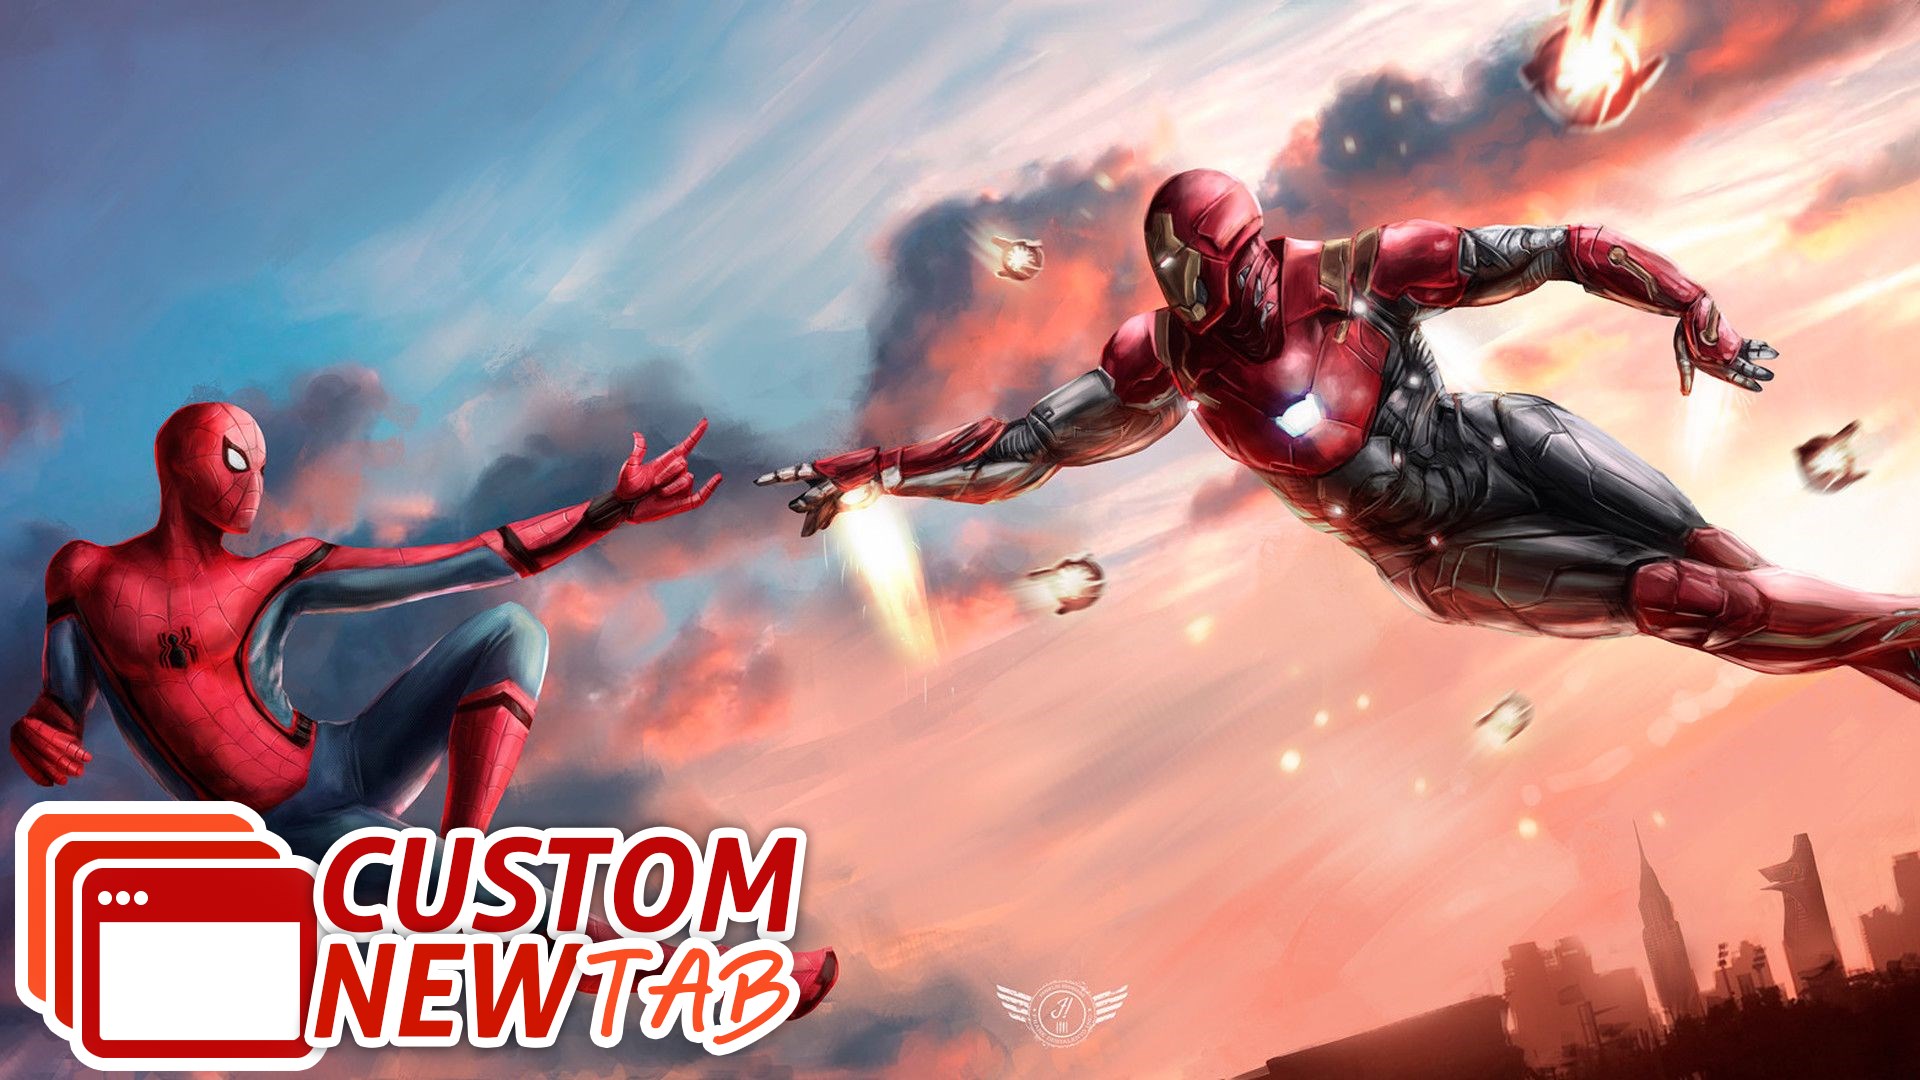 spiderman fondo de pantalla,juego de acción y aventura,superhéroe,personaje de ficción,cg artwork,héroe